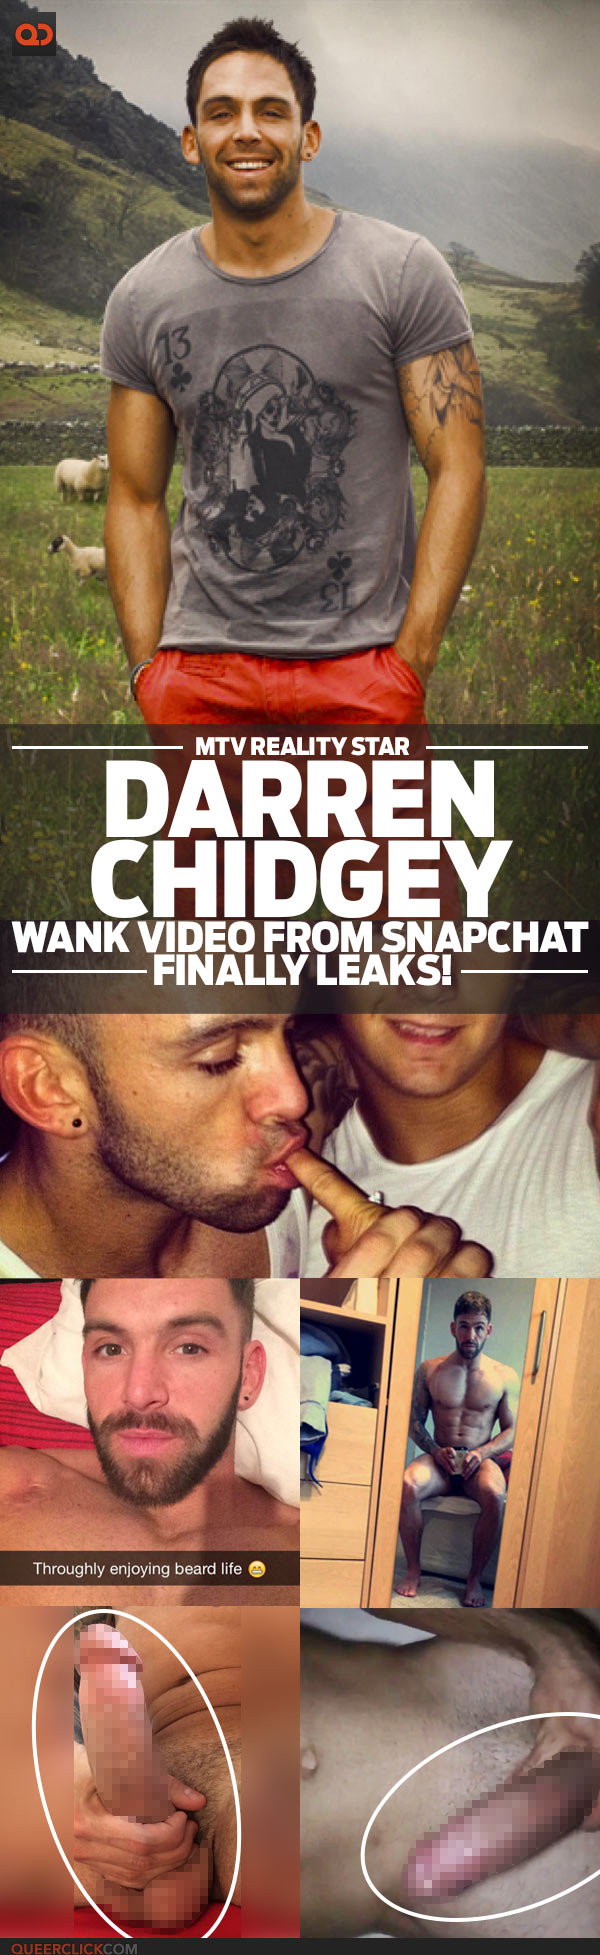 Darren Chidgey, MTV Reality Star, Wank Video From Snapchat Finally Leaks!